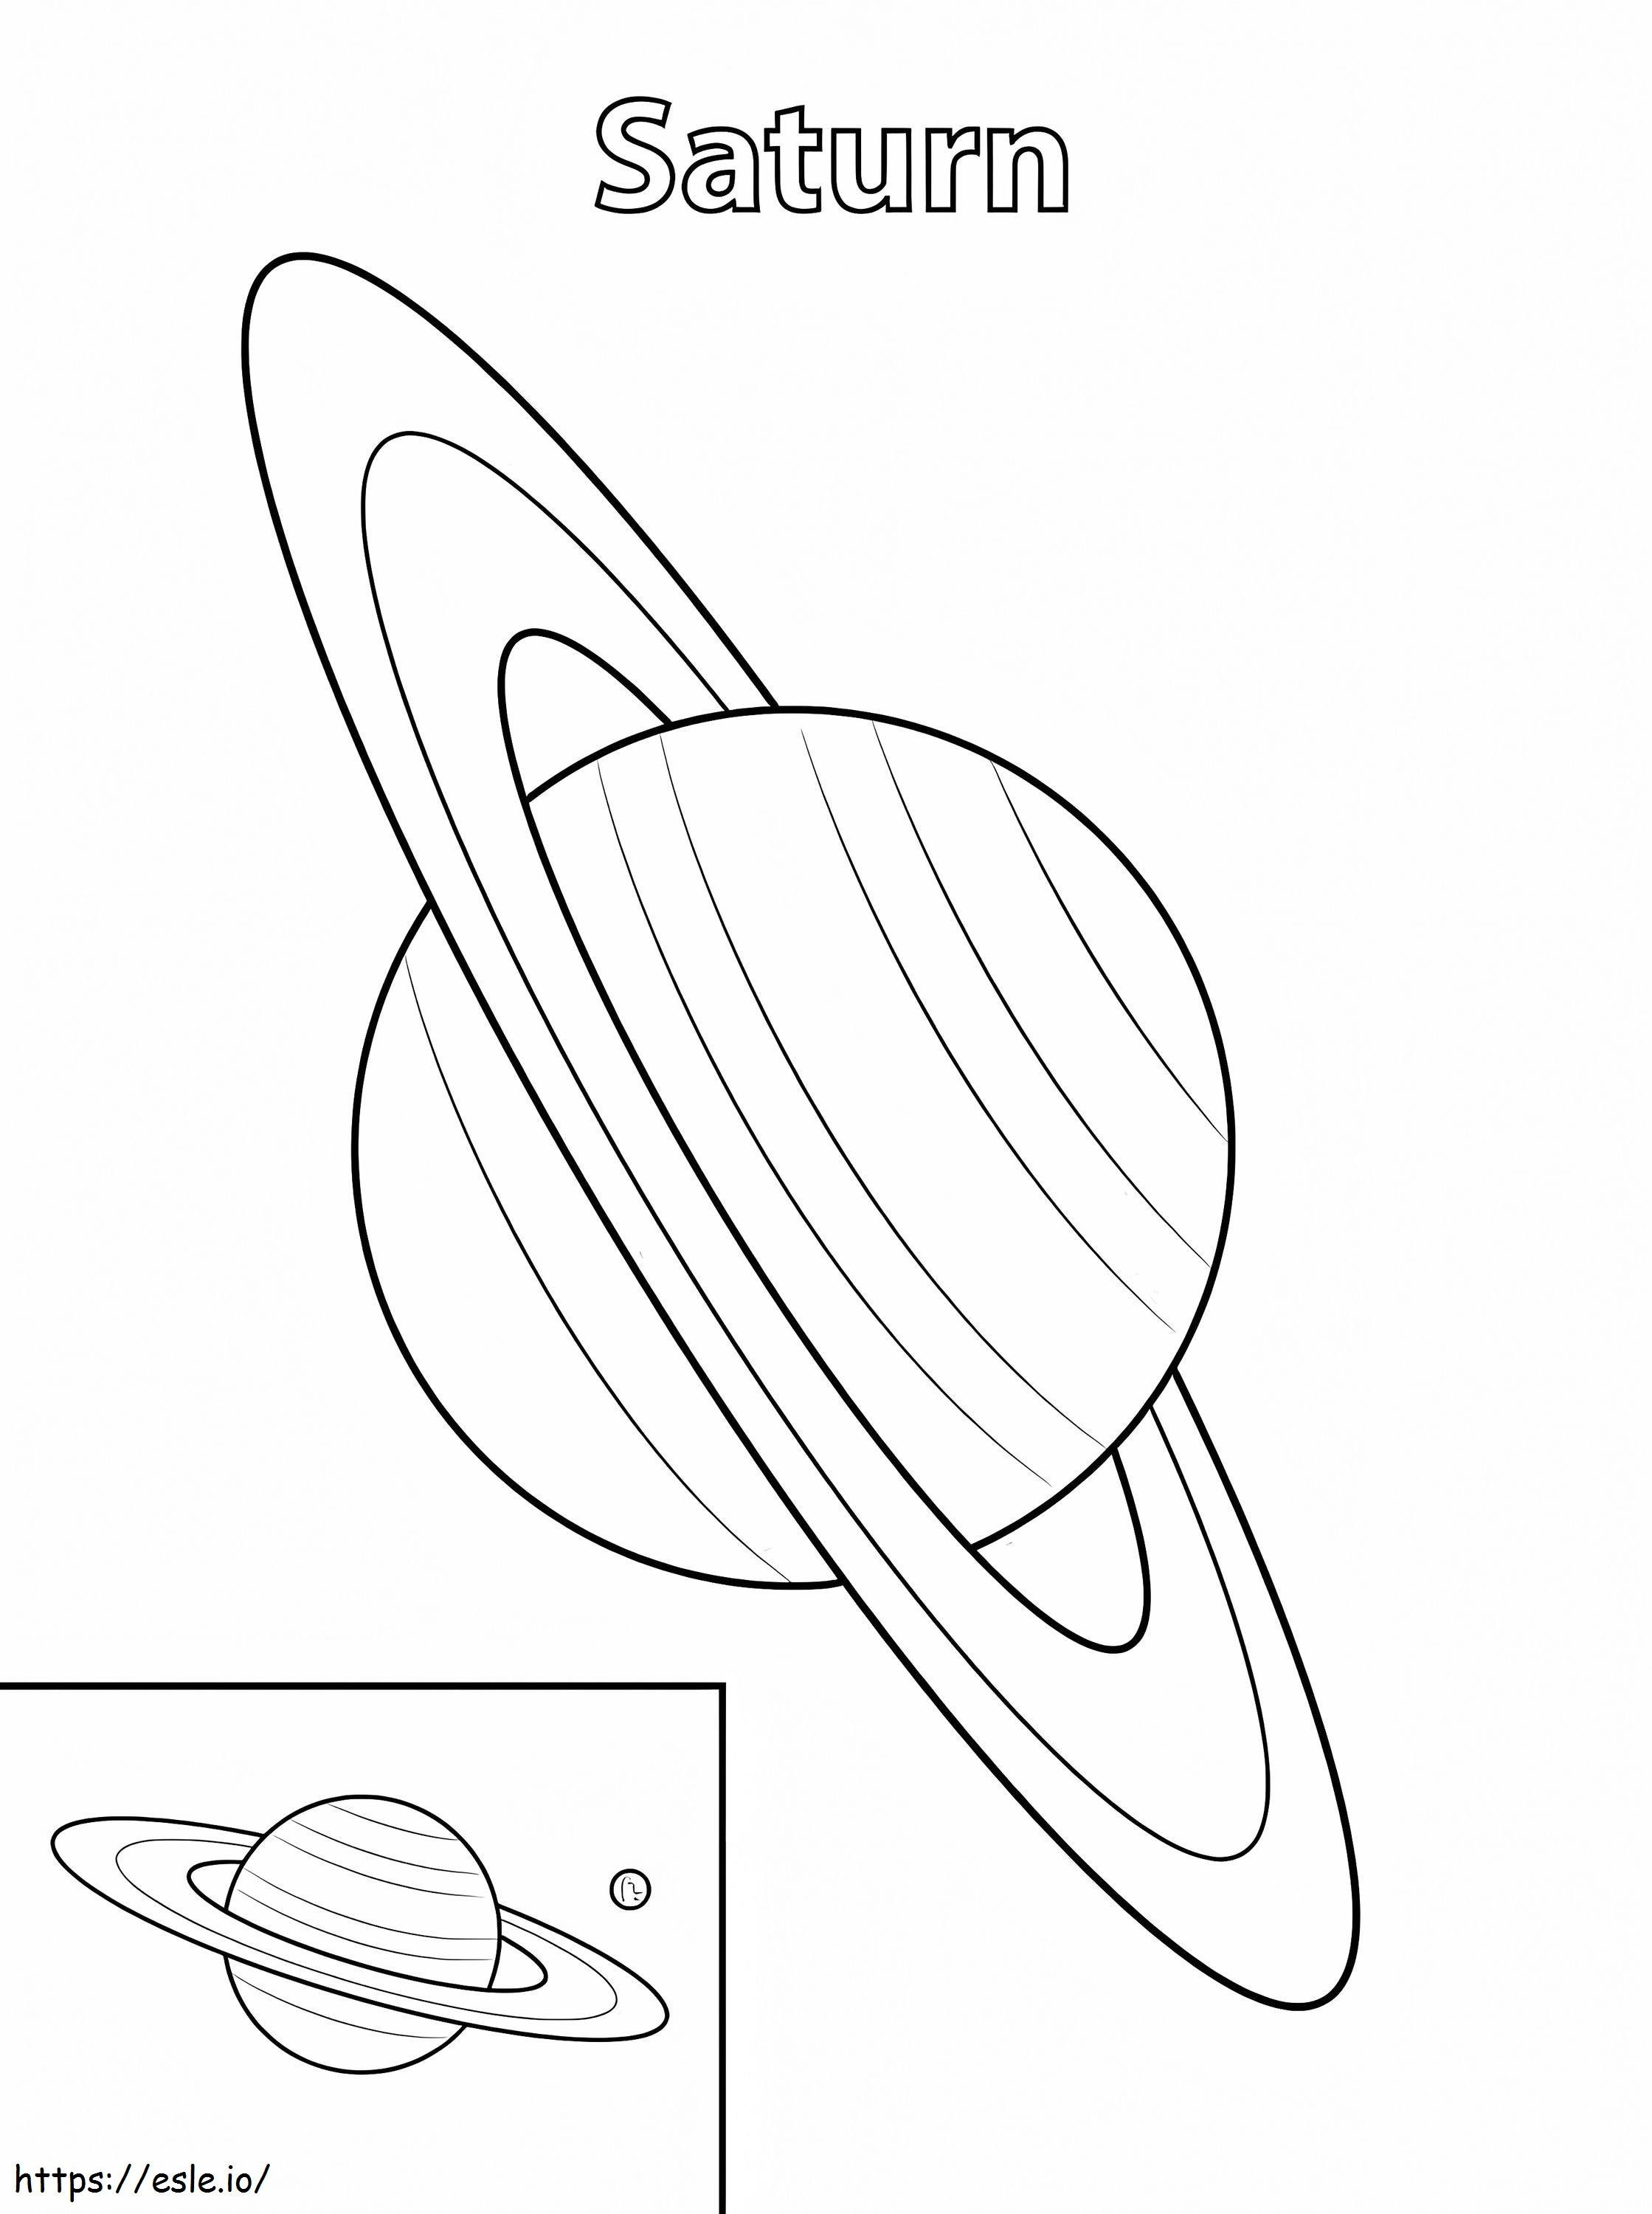 Pianeta Saturno da colorare